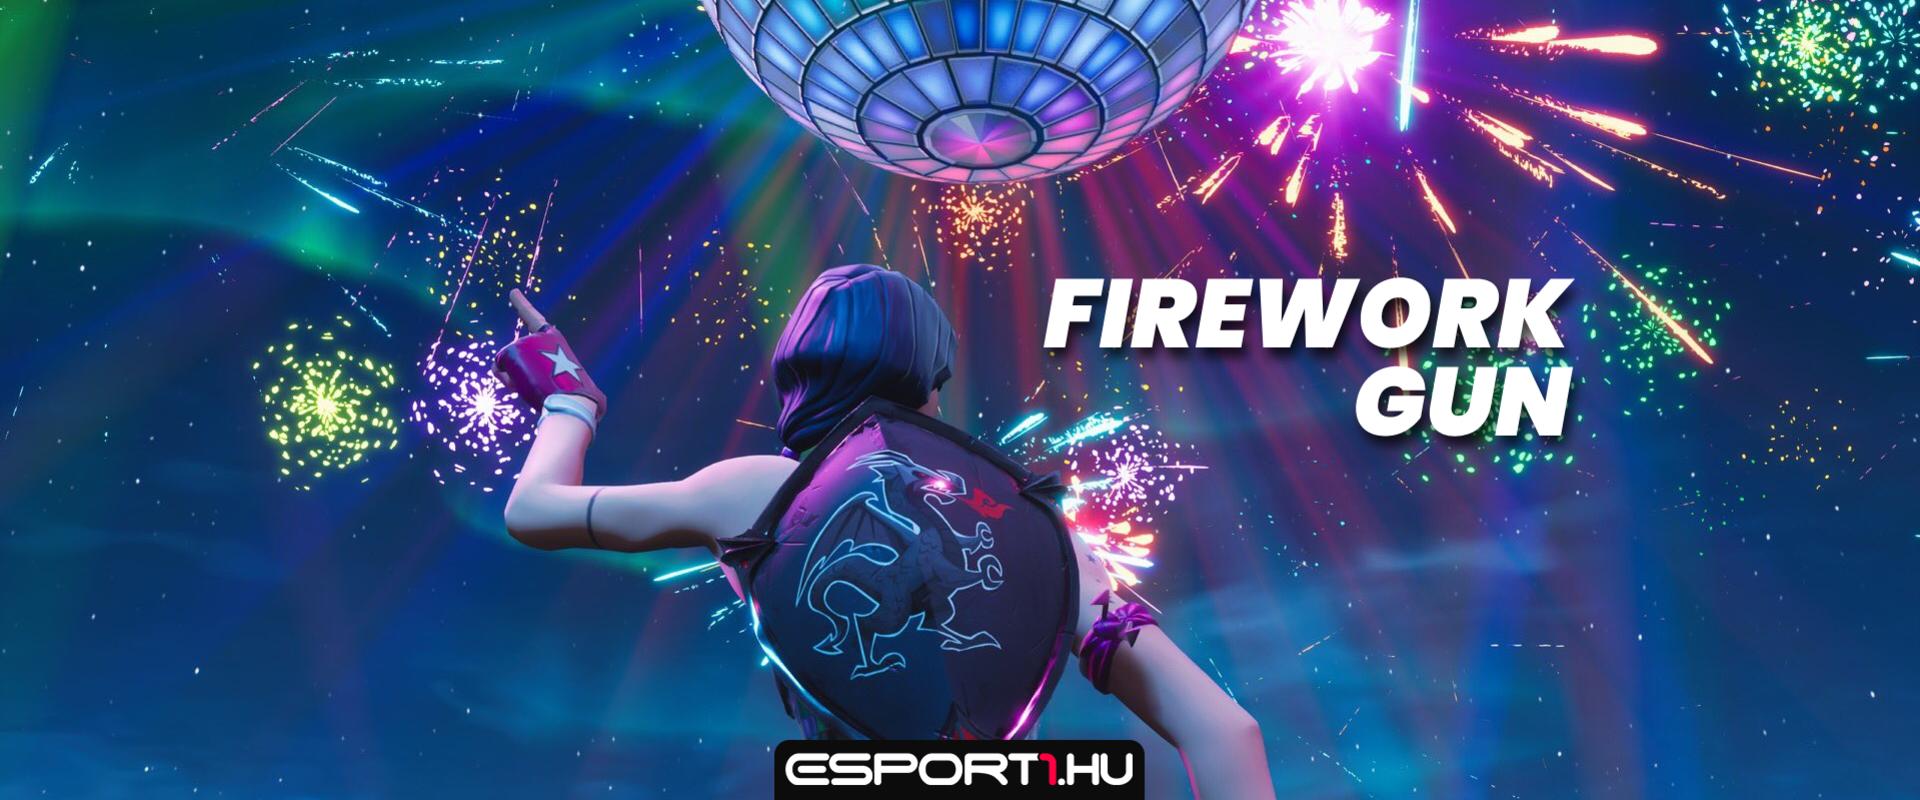 Fortnite: Ilyen lesz a Firework Gun